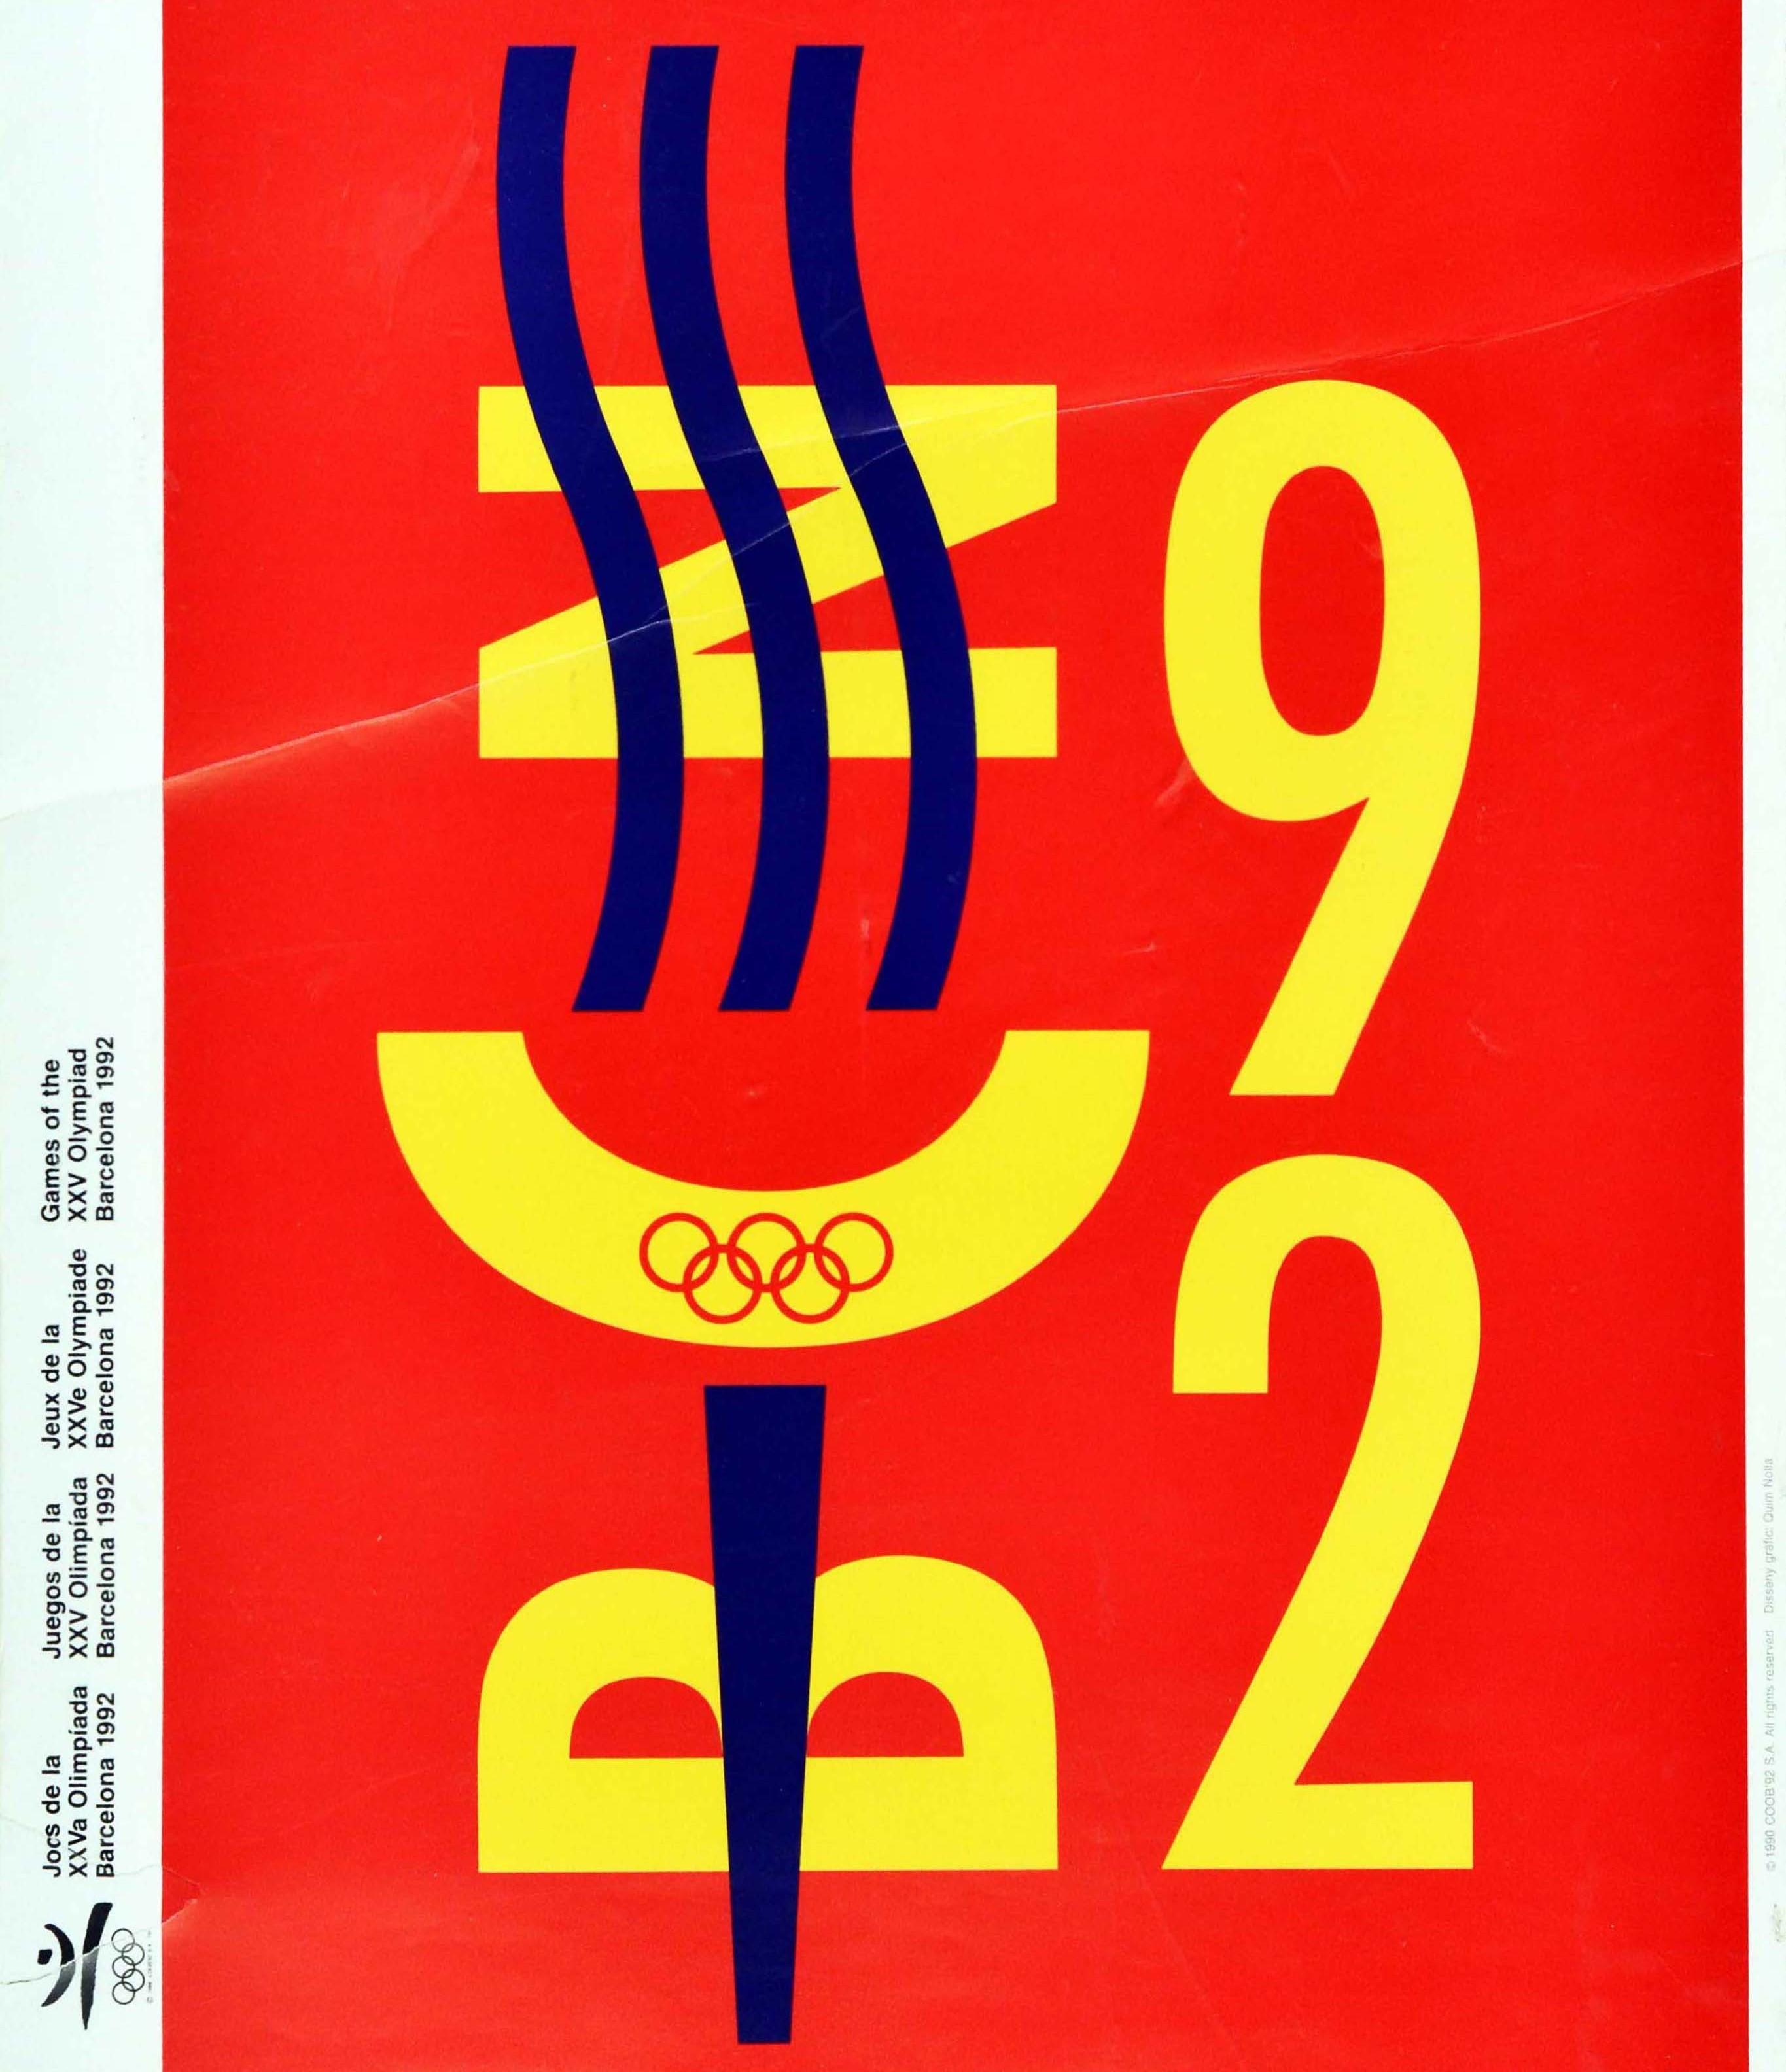 barcelona 1992 olympics